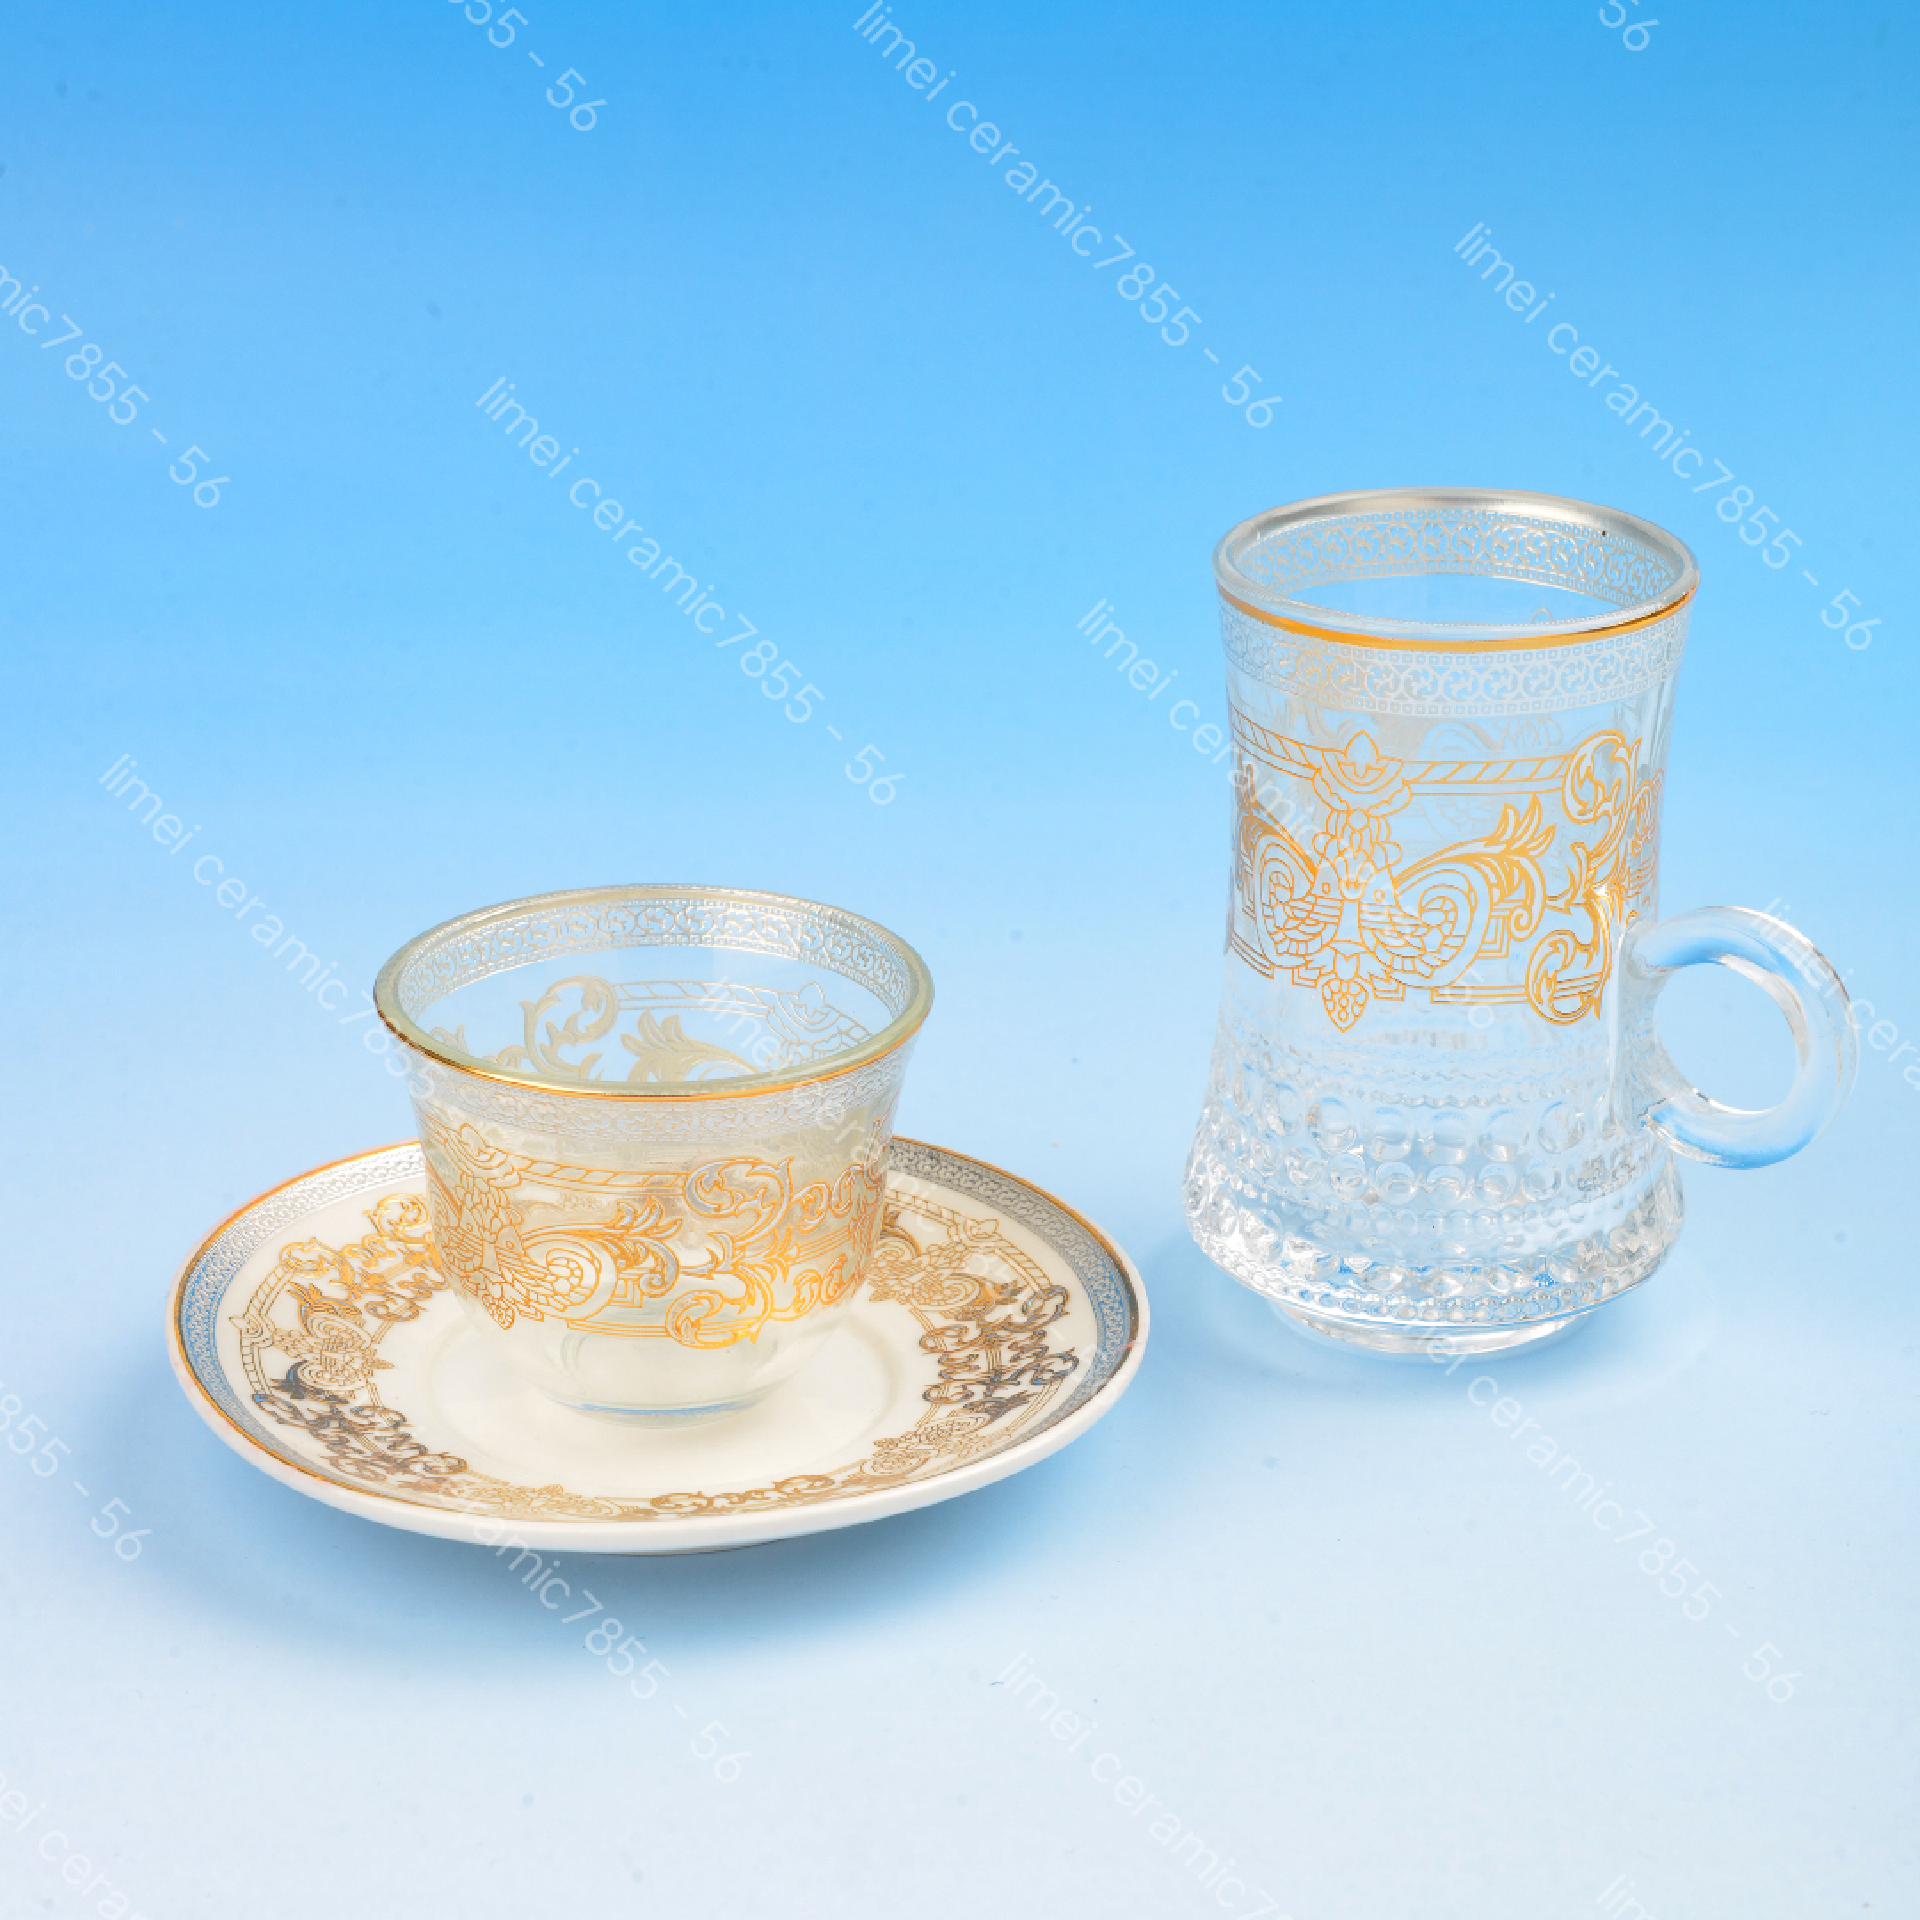 玻璃杯陶瓷碟18头礼盒包装出口中东热卖款红茶咖啡六杯碟手指杯图